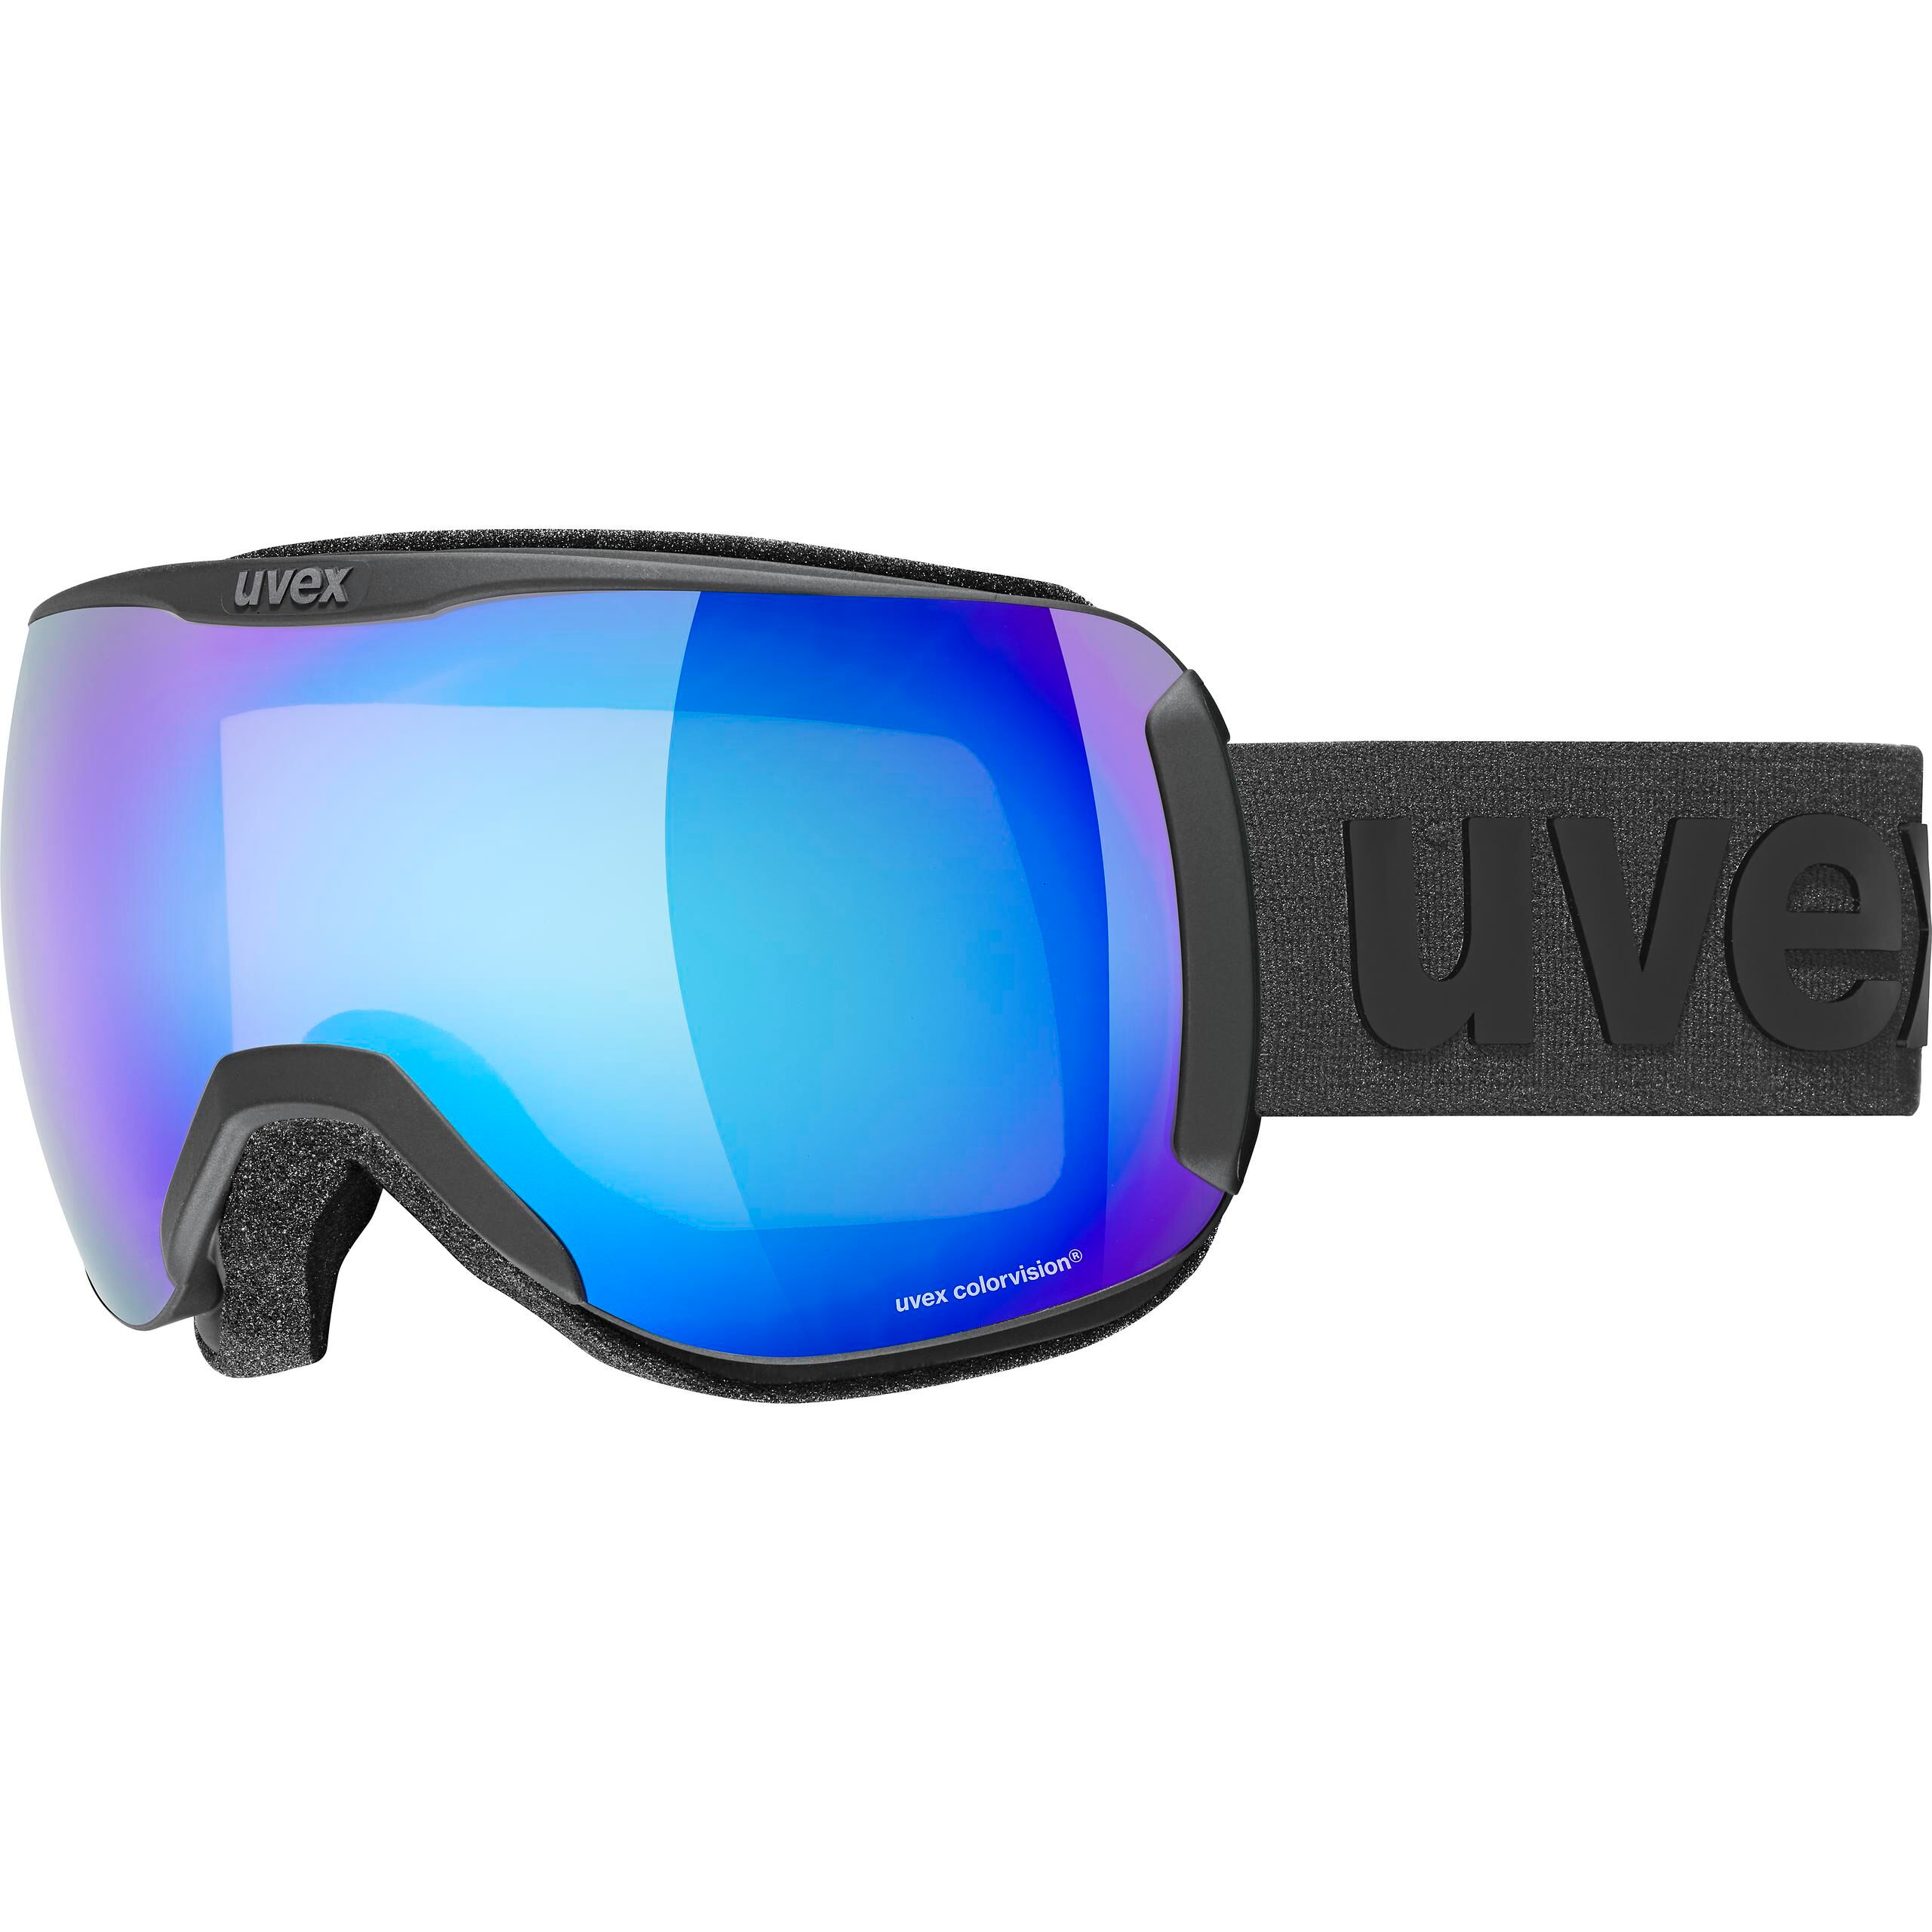 Uvex Downhill 2100 CV - Ski goggles